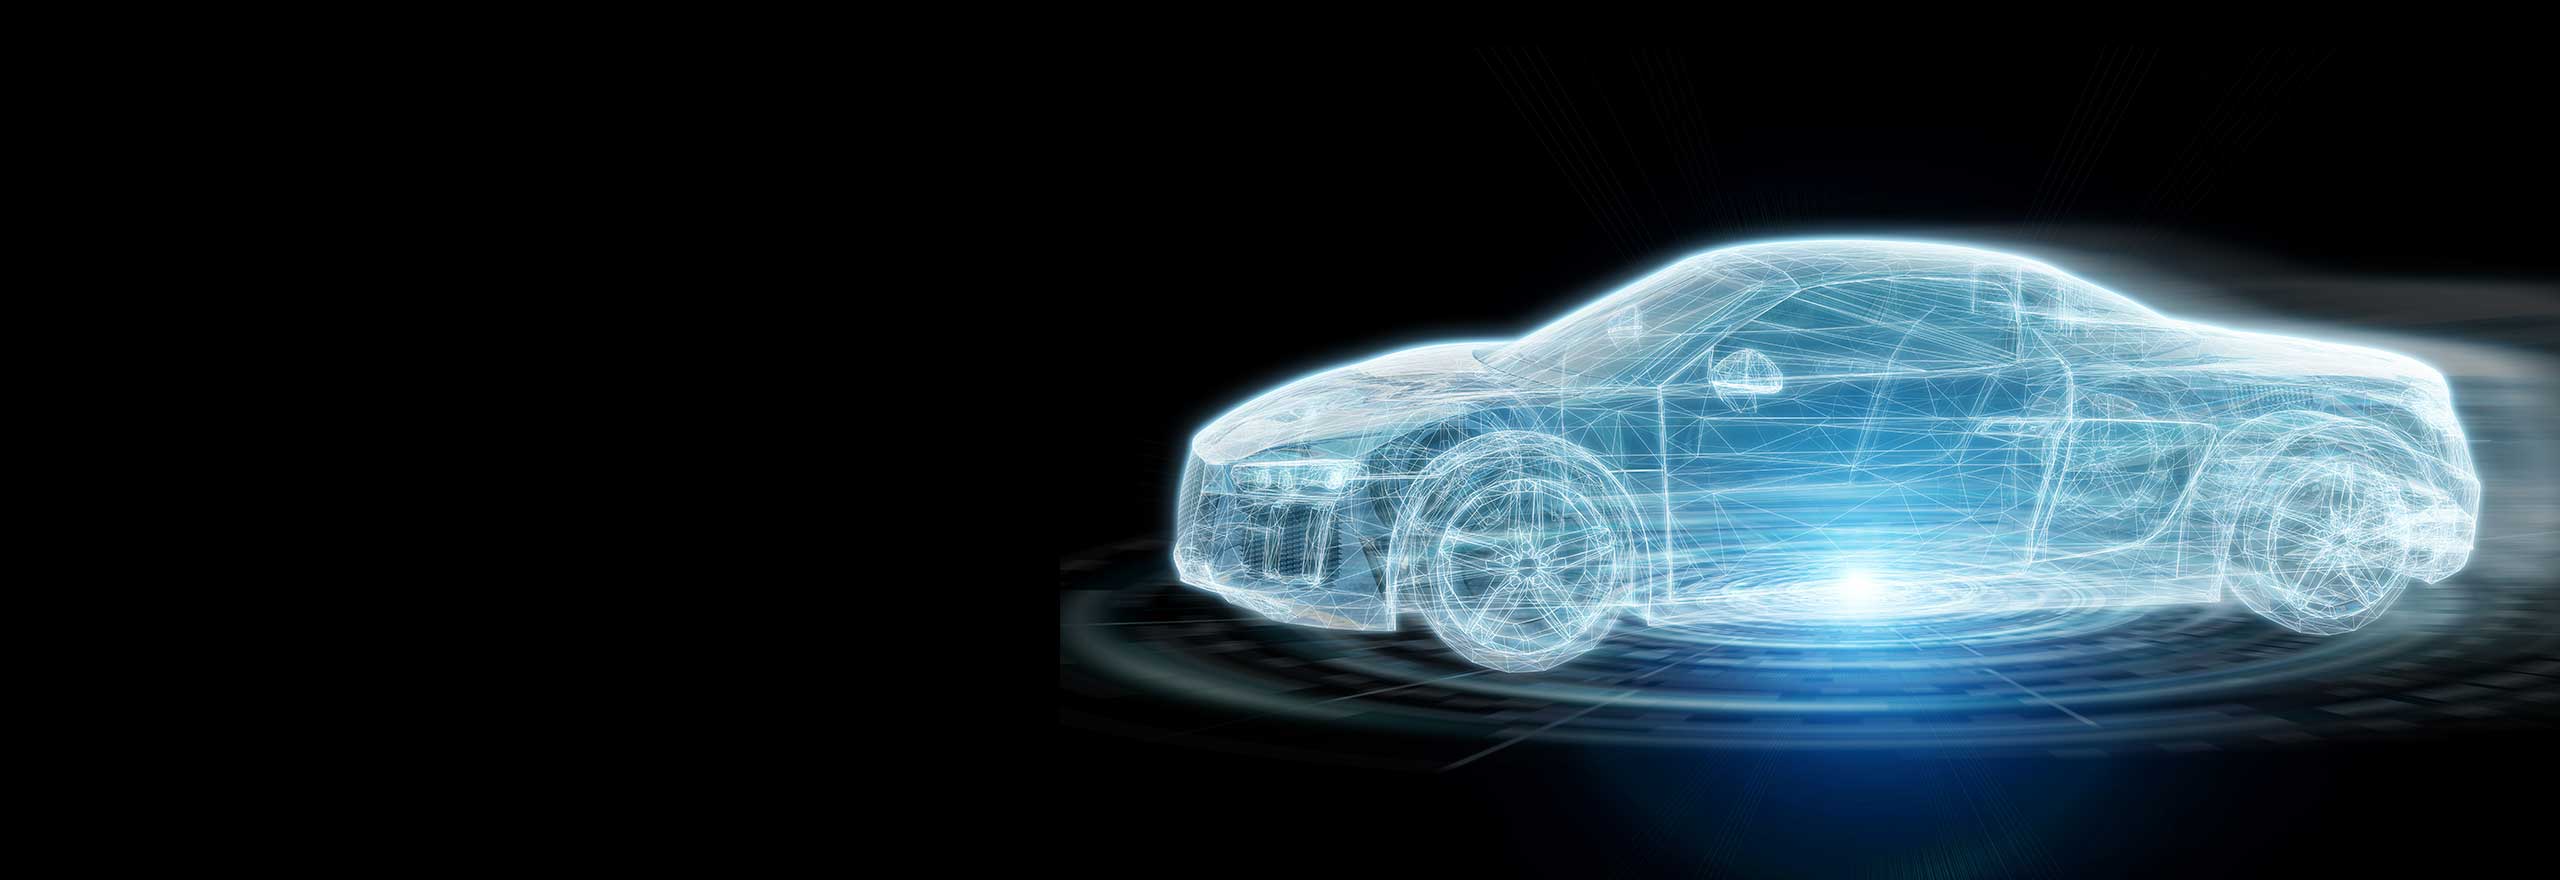 Modelo digital exterior de vehículos para simulación